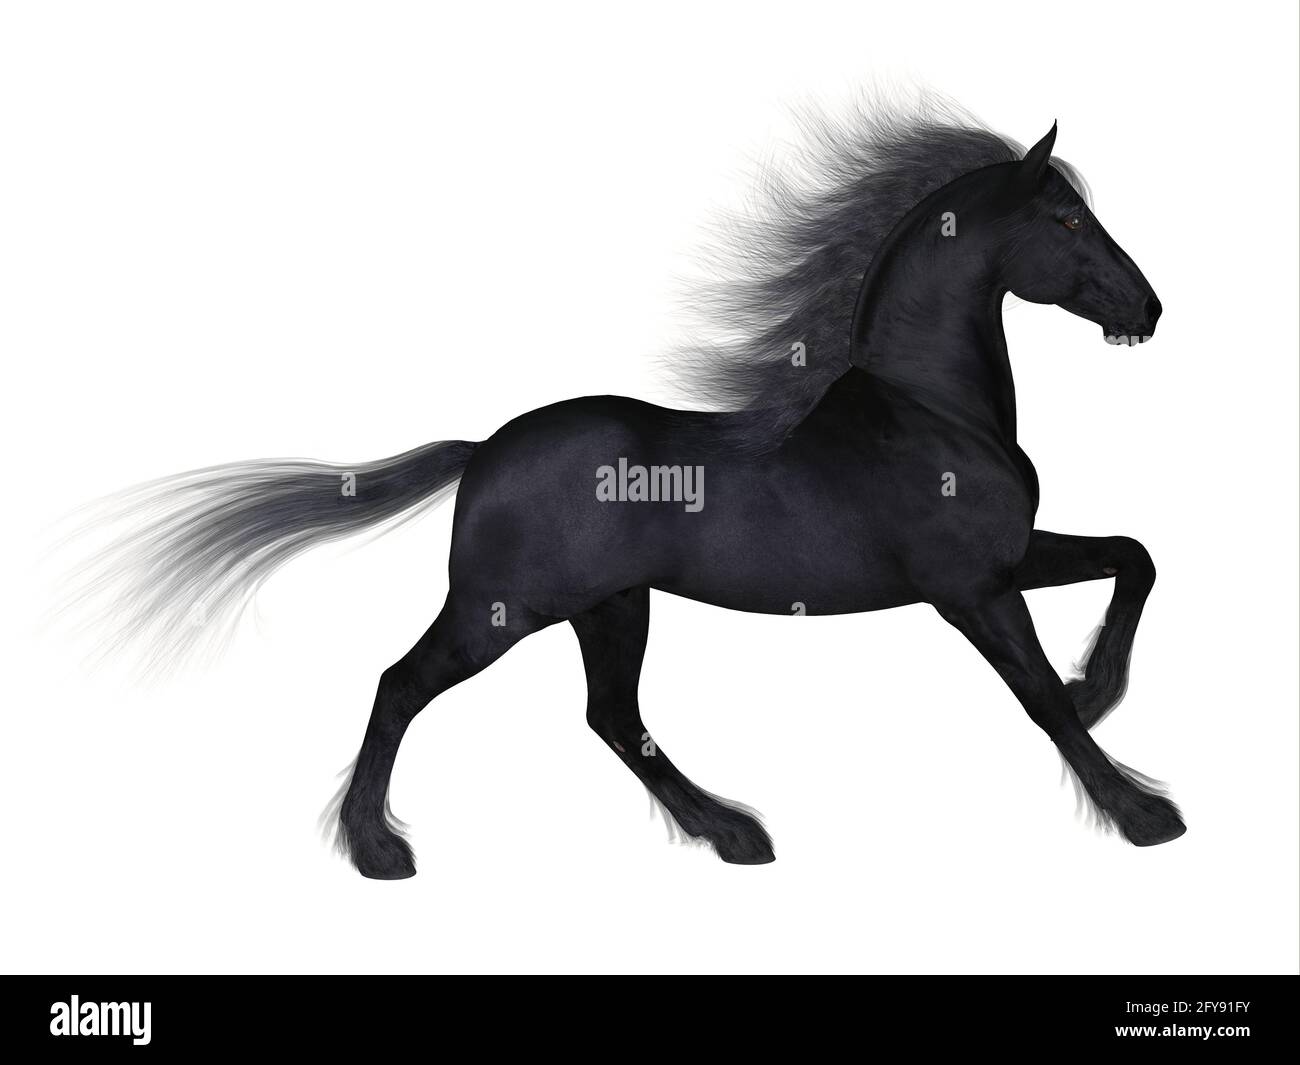 Le Friesian est une race distinctive de cheval noir développée aux pays-Bas comme un léger tirant d'eau pour faire des travaux agricoles. Banque D'Images